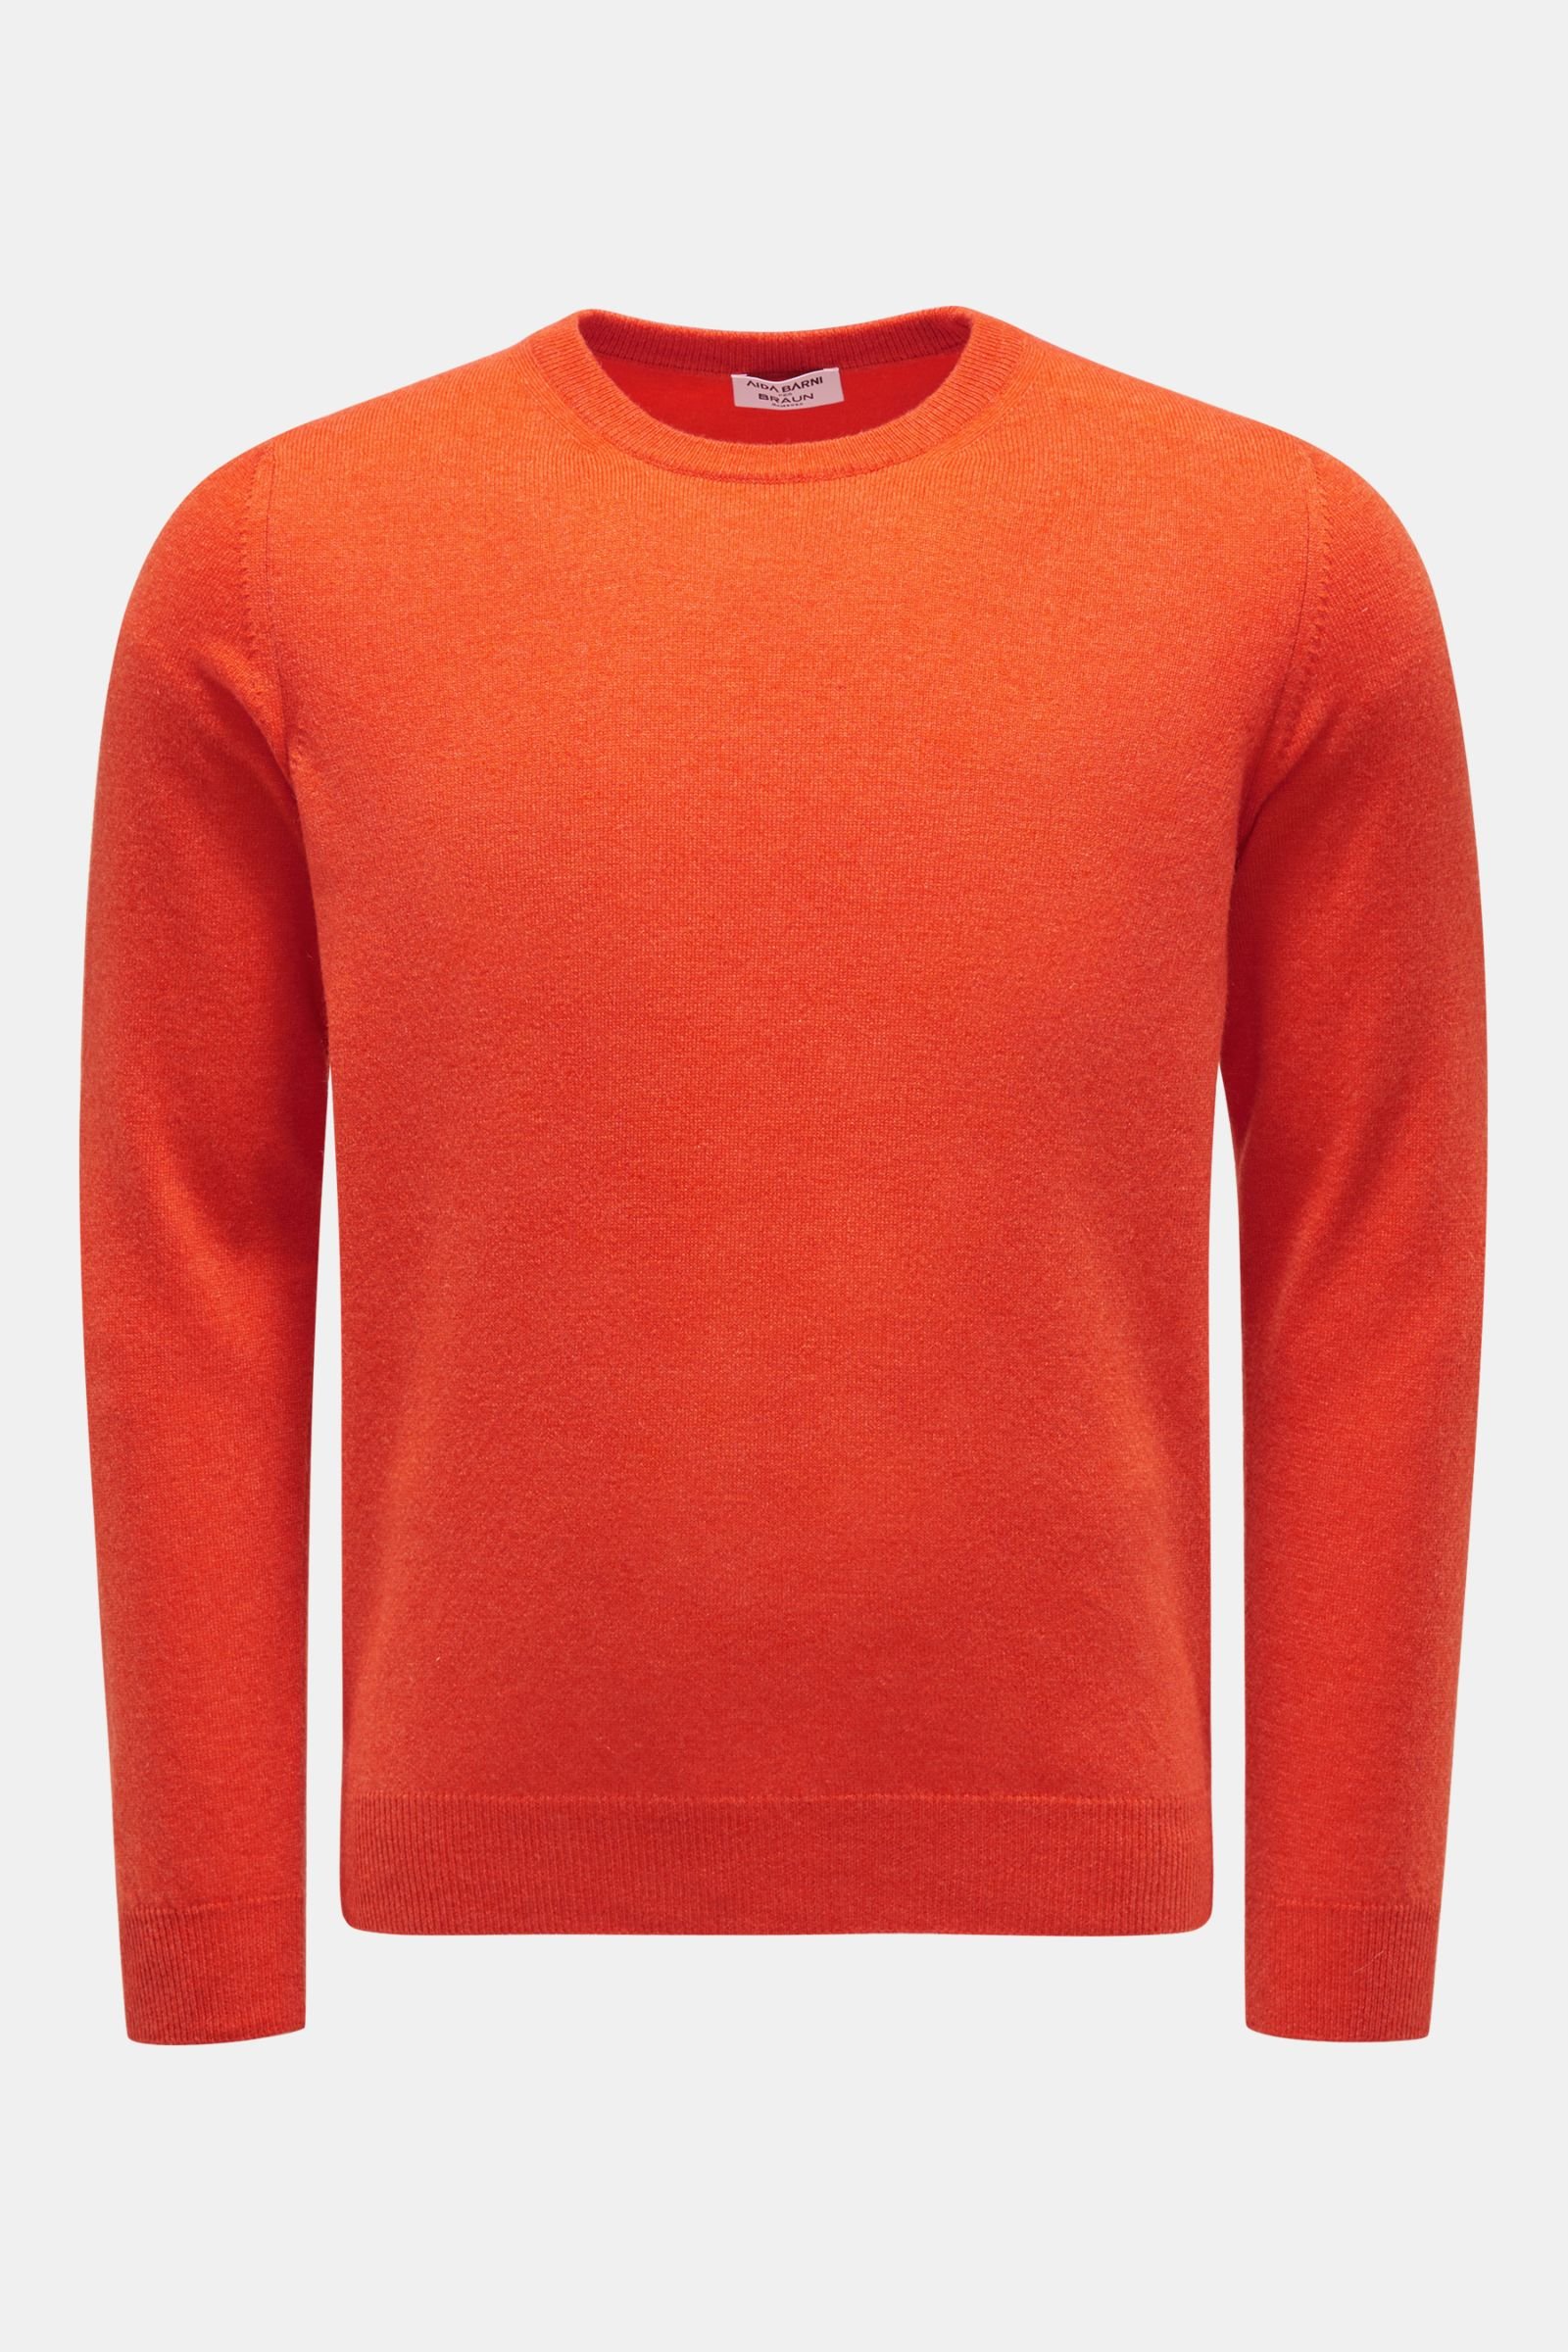 Cashmere Rundhals-Pullover orange